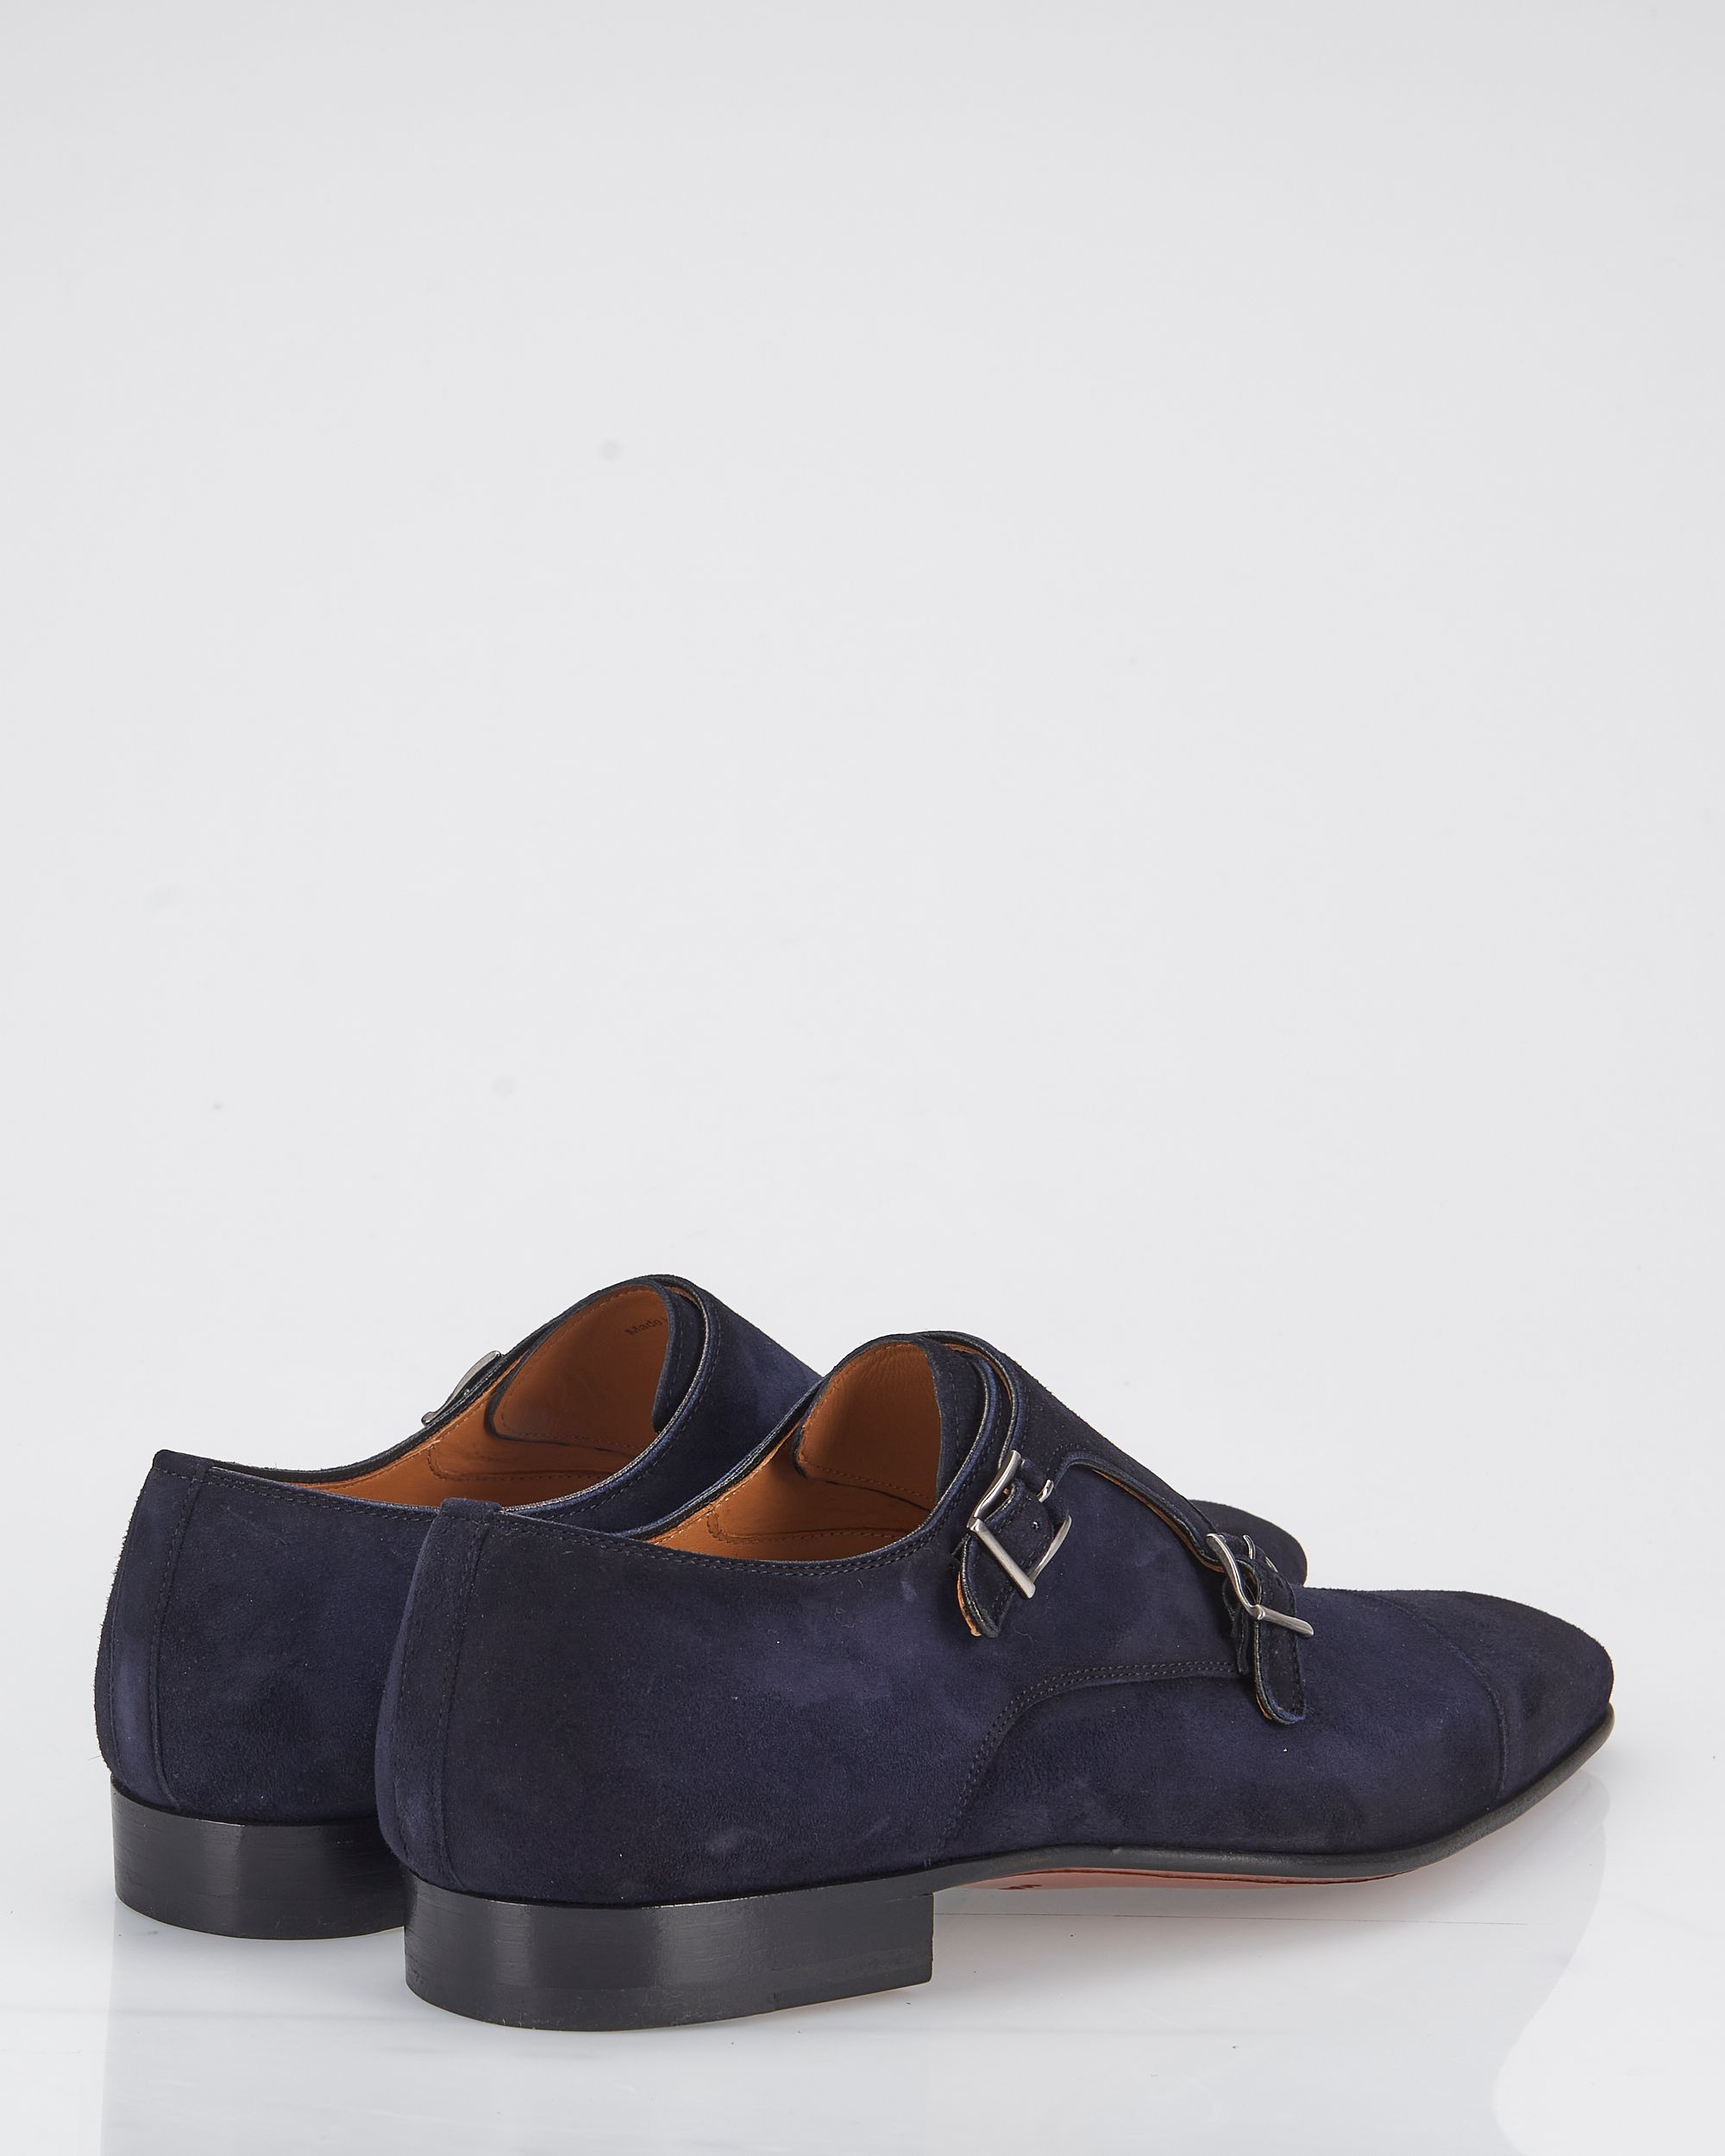 Magnanni Geklede schoenen Donker blauw 084909-001-41